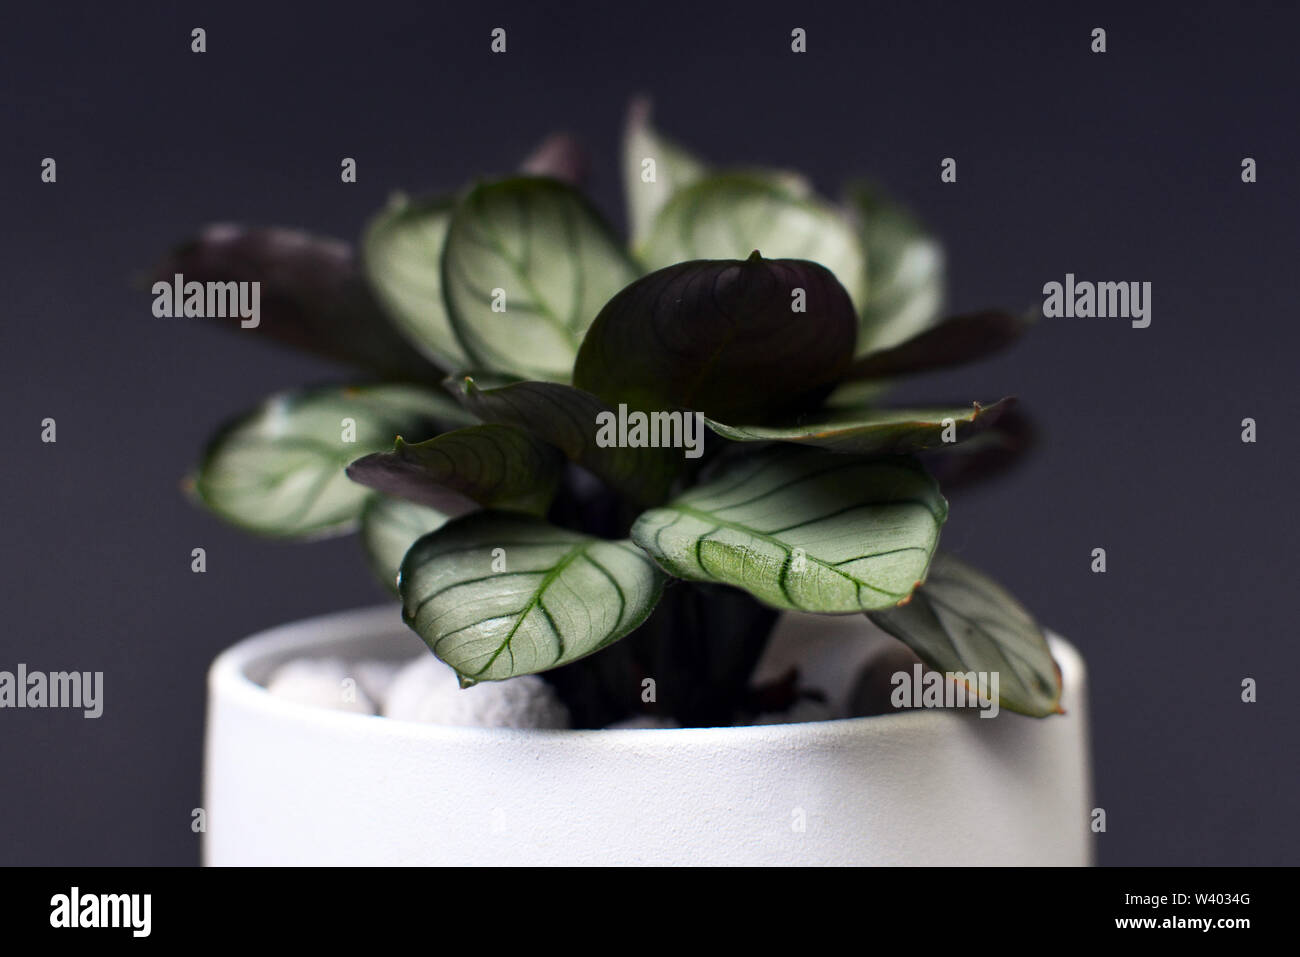 Small exotic 'Ctenanthe Burle Marxii Amagris' plant in white pot on black background Stock Photo